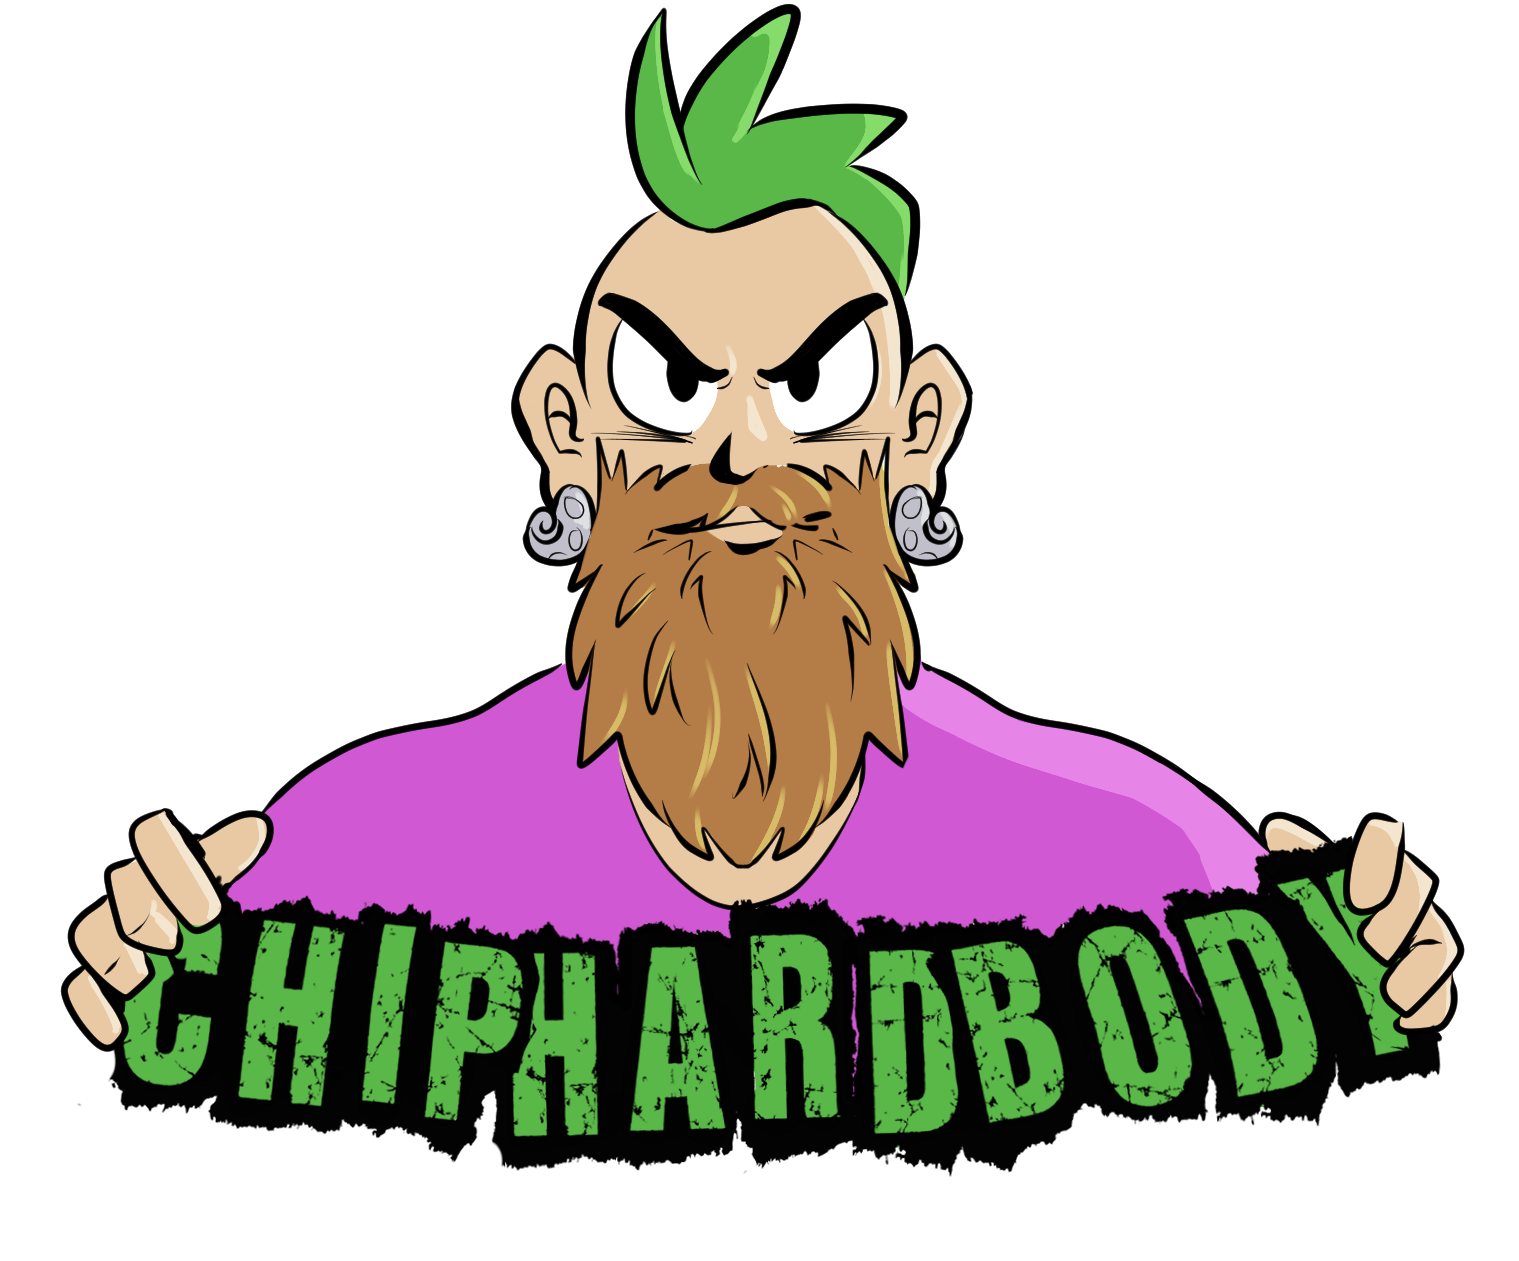 ChipHardbody